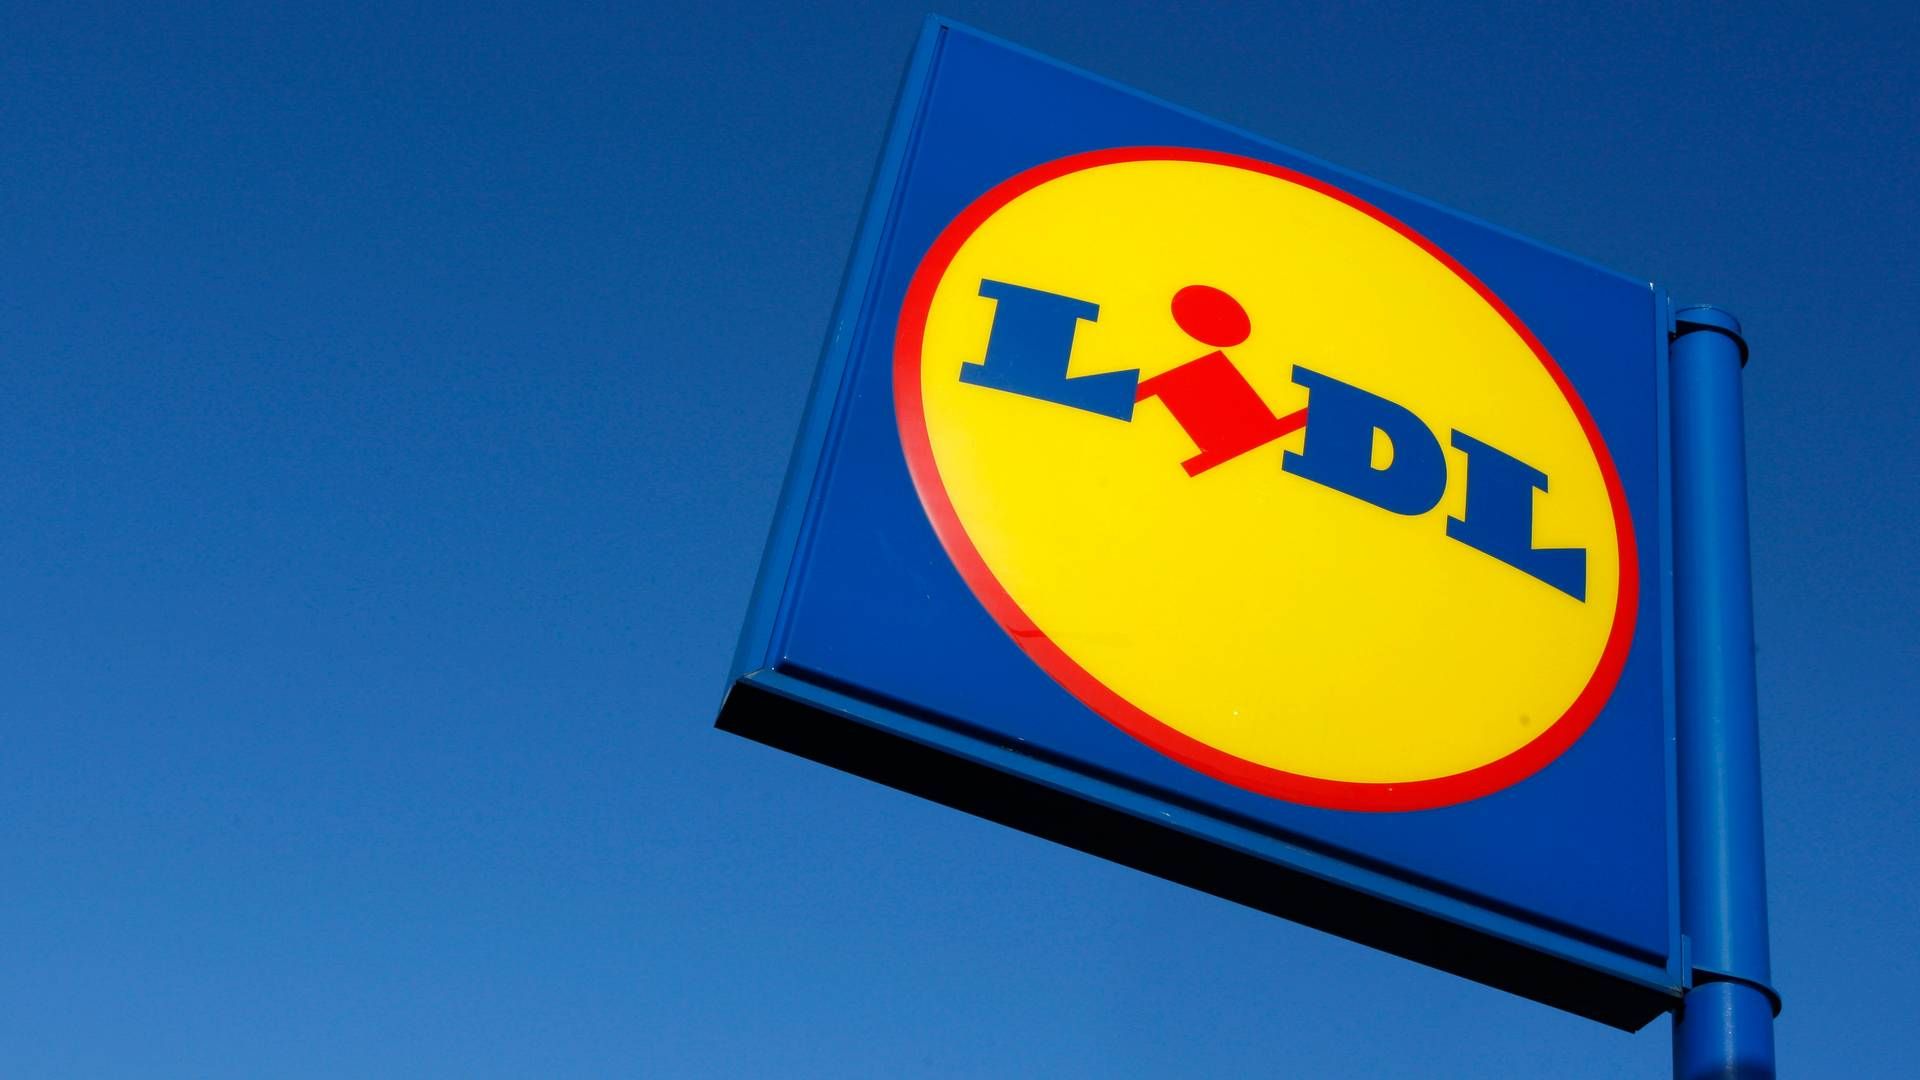 Med købet af 11 tidligere Aldi-butikker øger Lidl især sin tilstedeværelse i Jylland, hvor otte af butikkerne ligger. | Foto: Stephen Hird/Reuters/Ritzau Scanpix